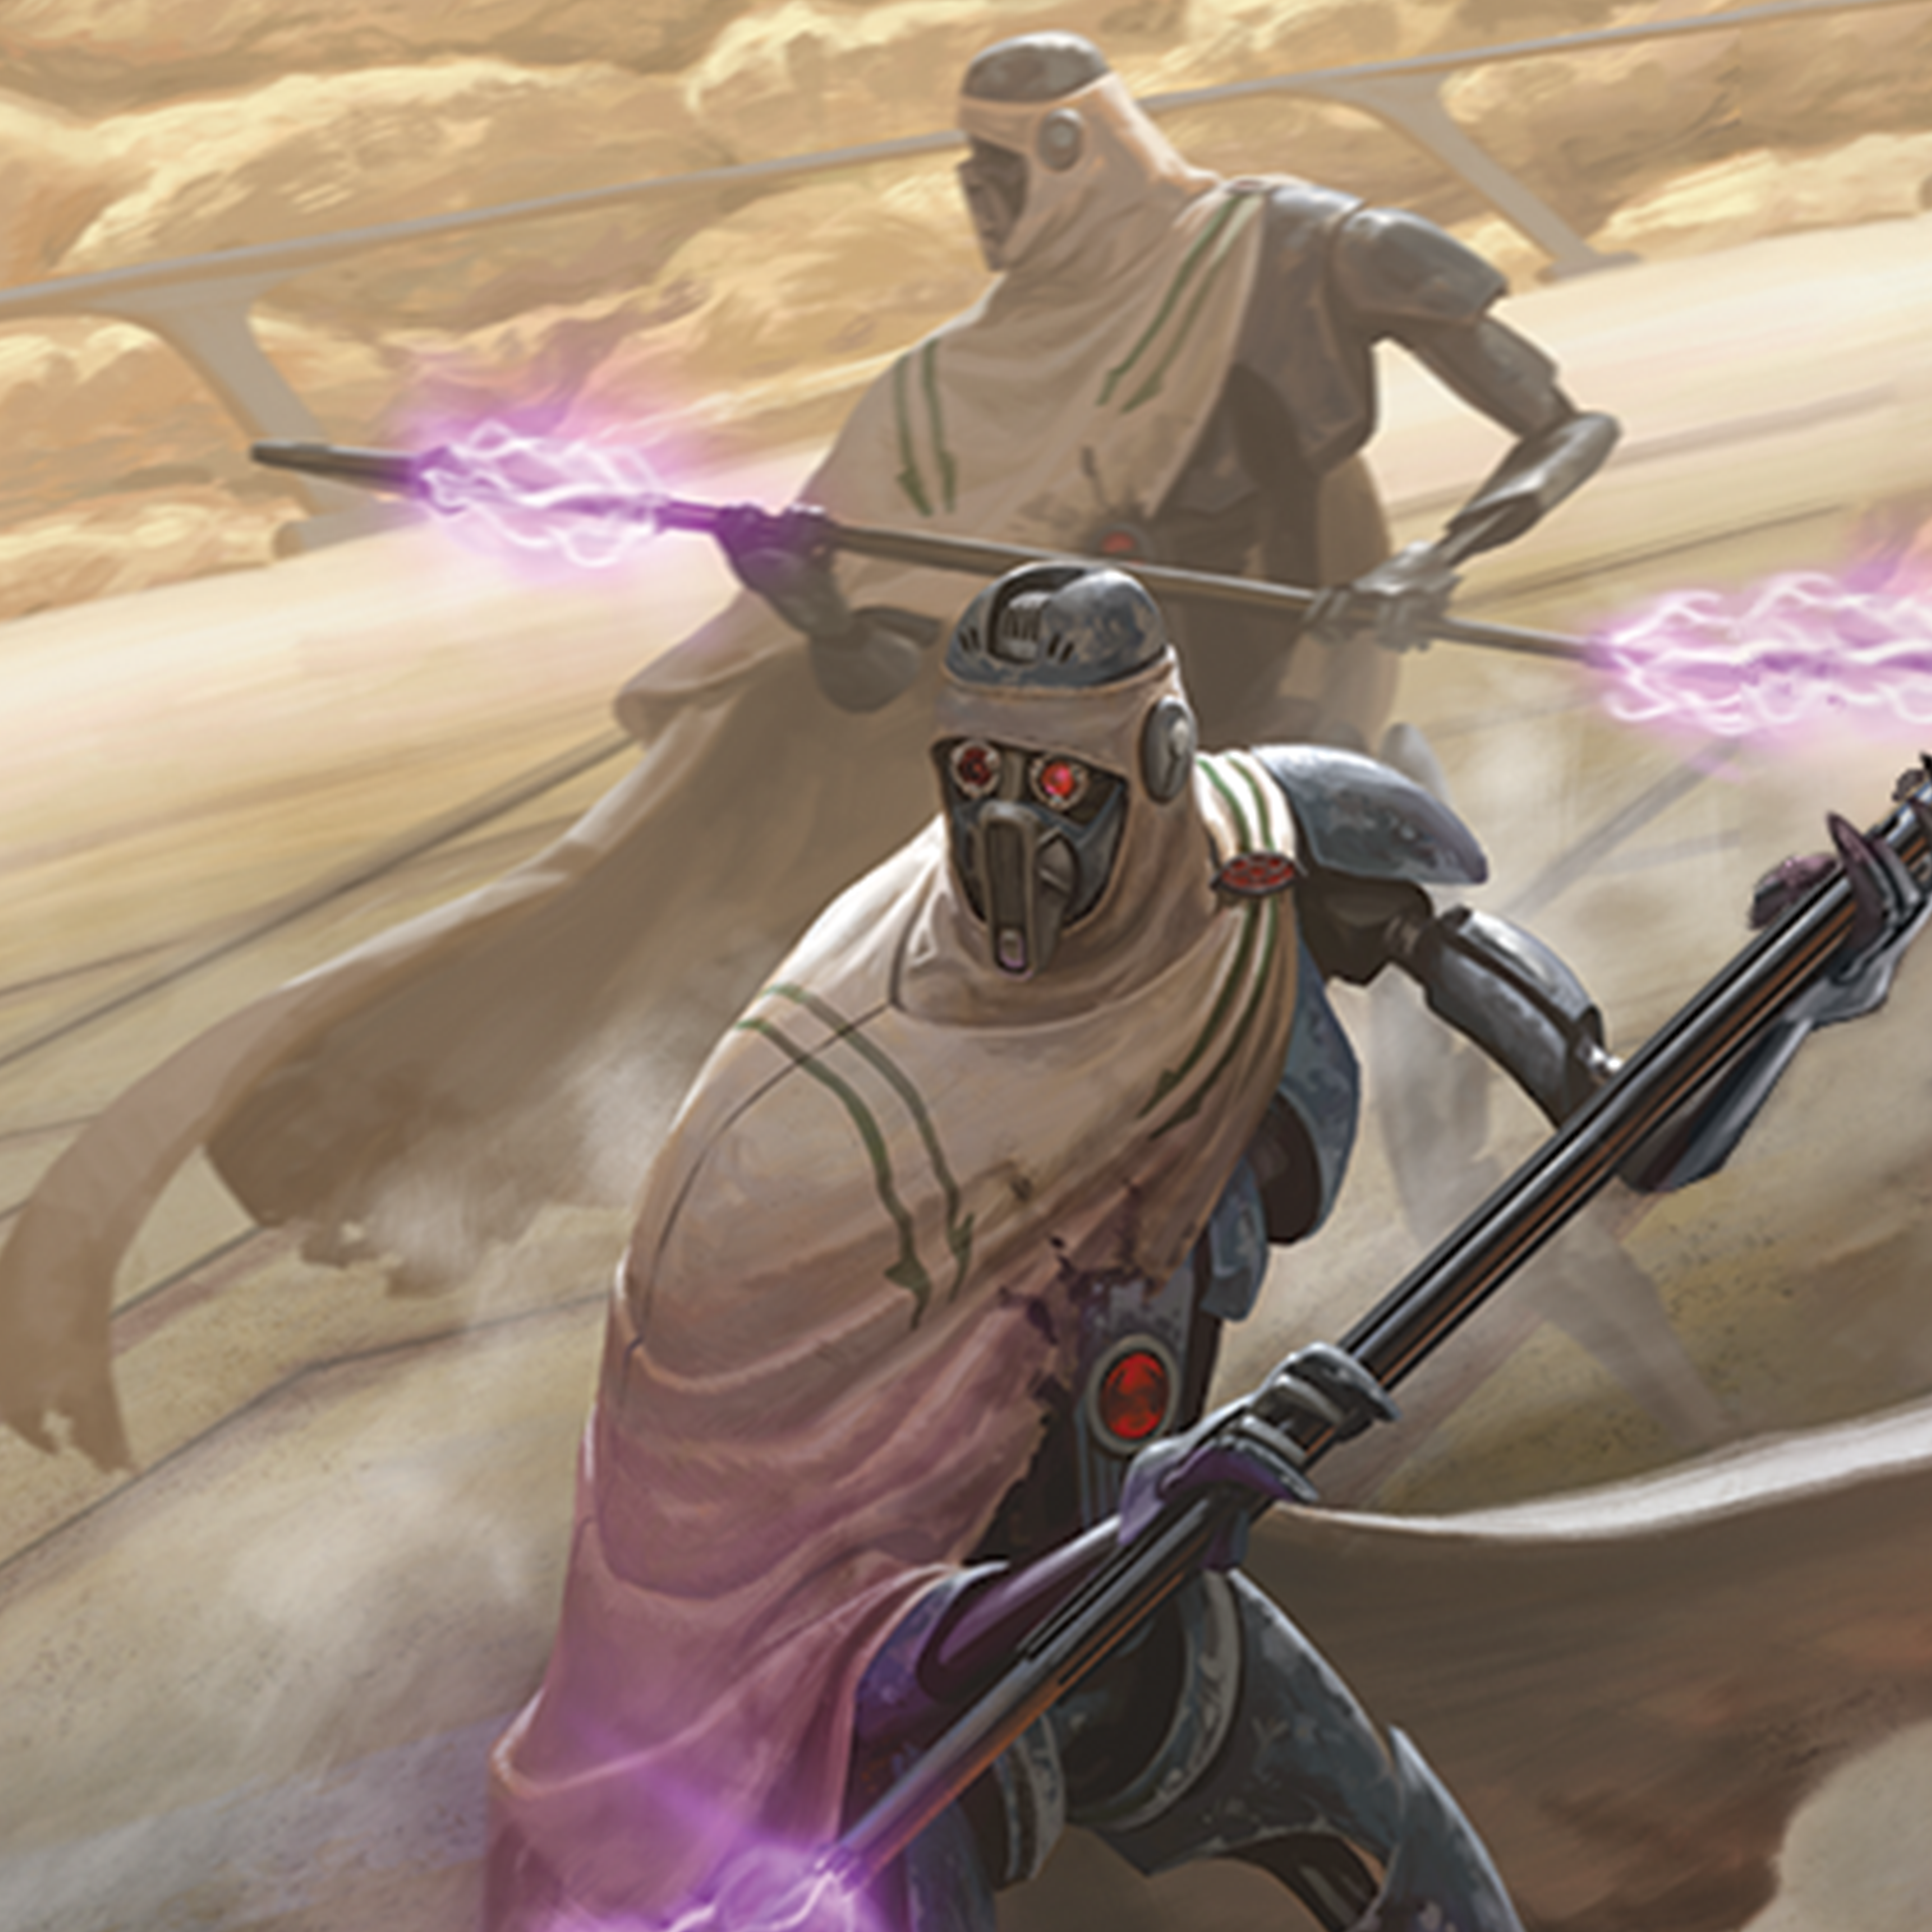 Star Wars: Legion – Separatist Invasion Force: Battle Force